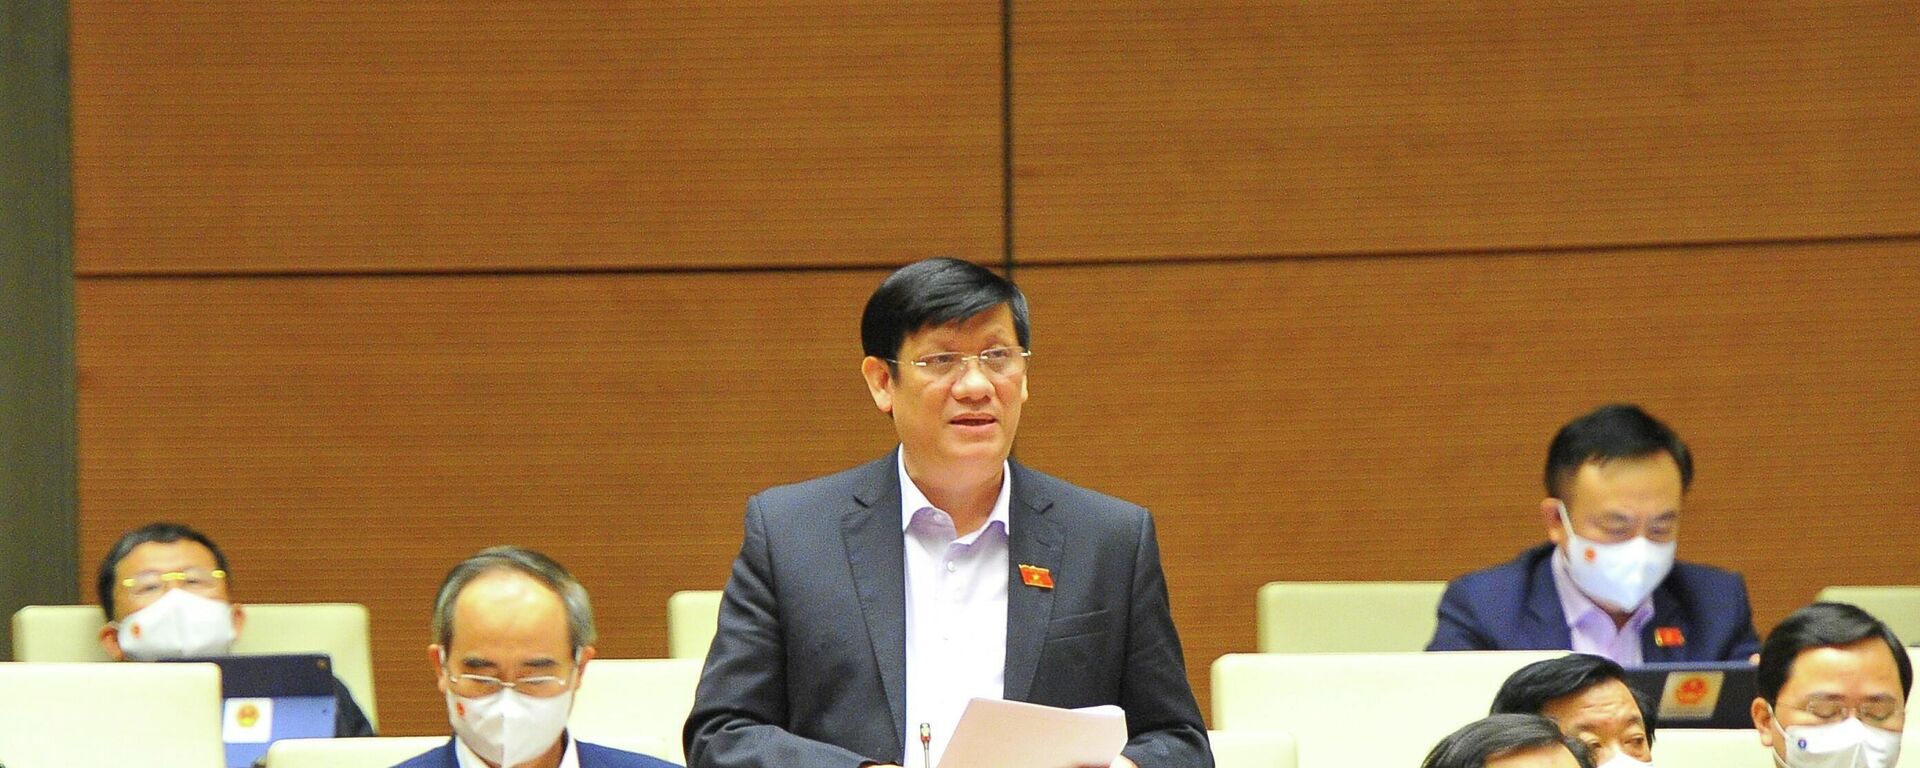 Bộ trưởng Bộ Y tế Nguyễn Thanh Long phát biểu giải trình, làm rõ một số vấn đề đại biểu Quốc hội nêu. - Sputnik Việt Nam, 1920, 09.11.2021